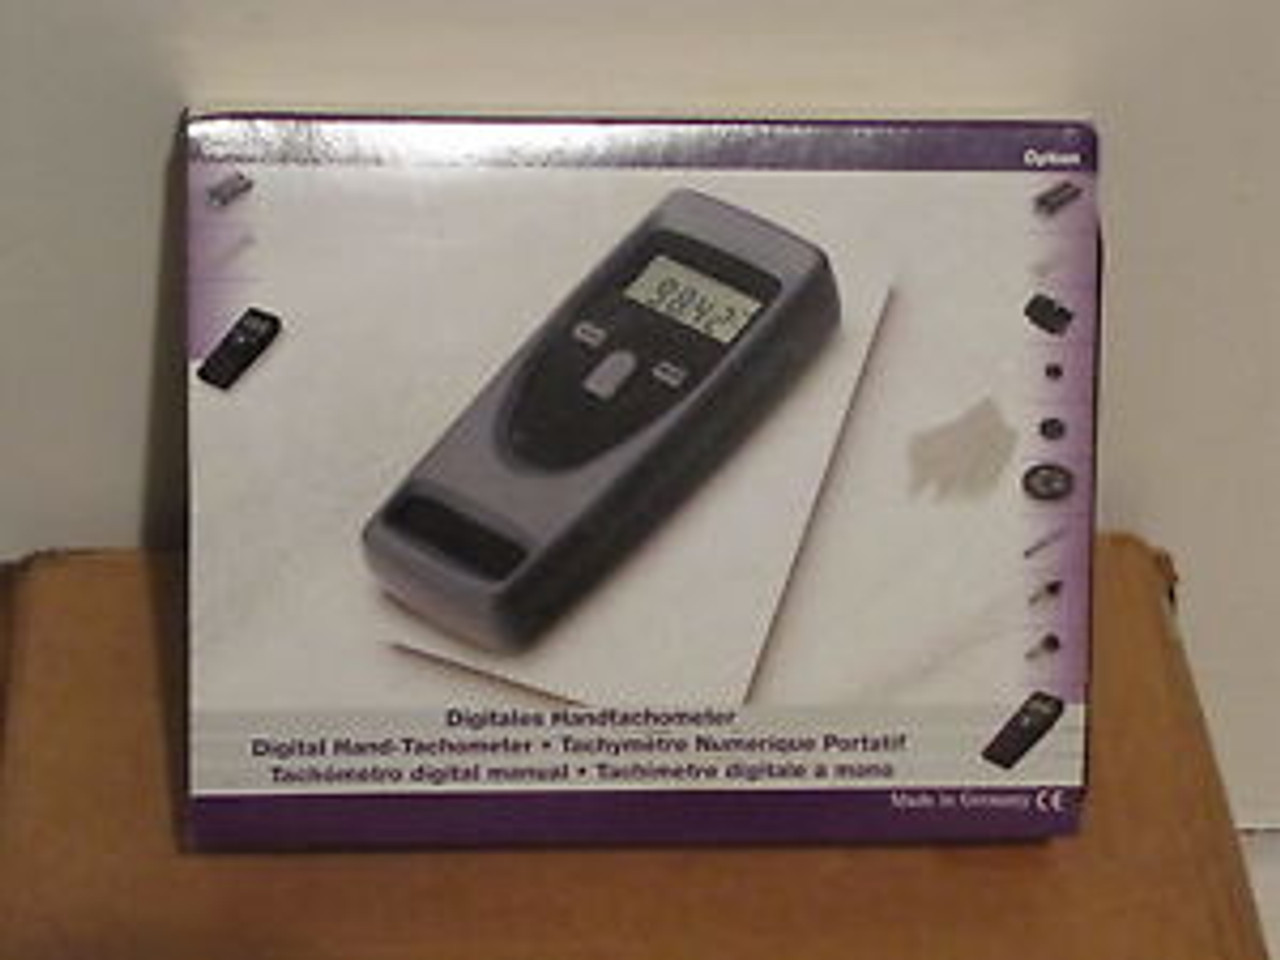 Check-Line Cdt-2000Hd Handheld Laser Tachometer Checkline